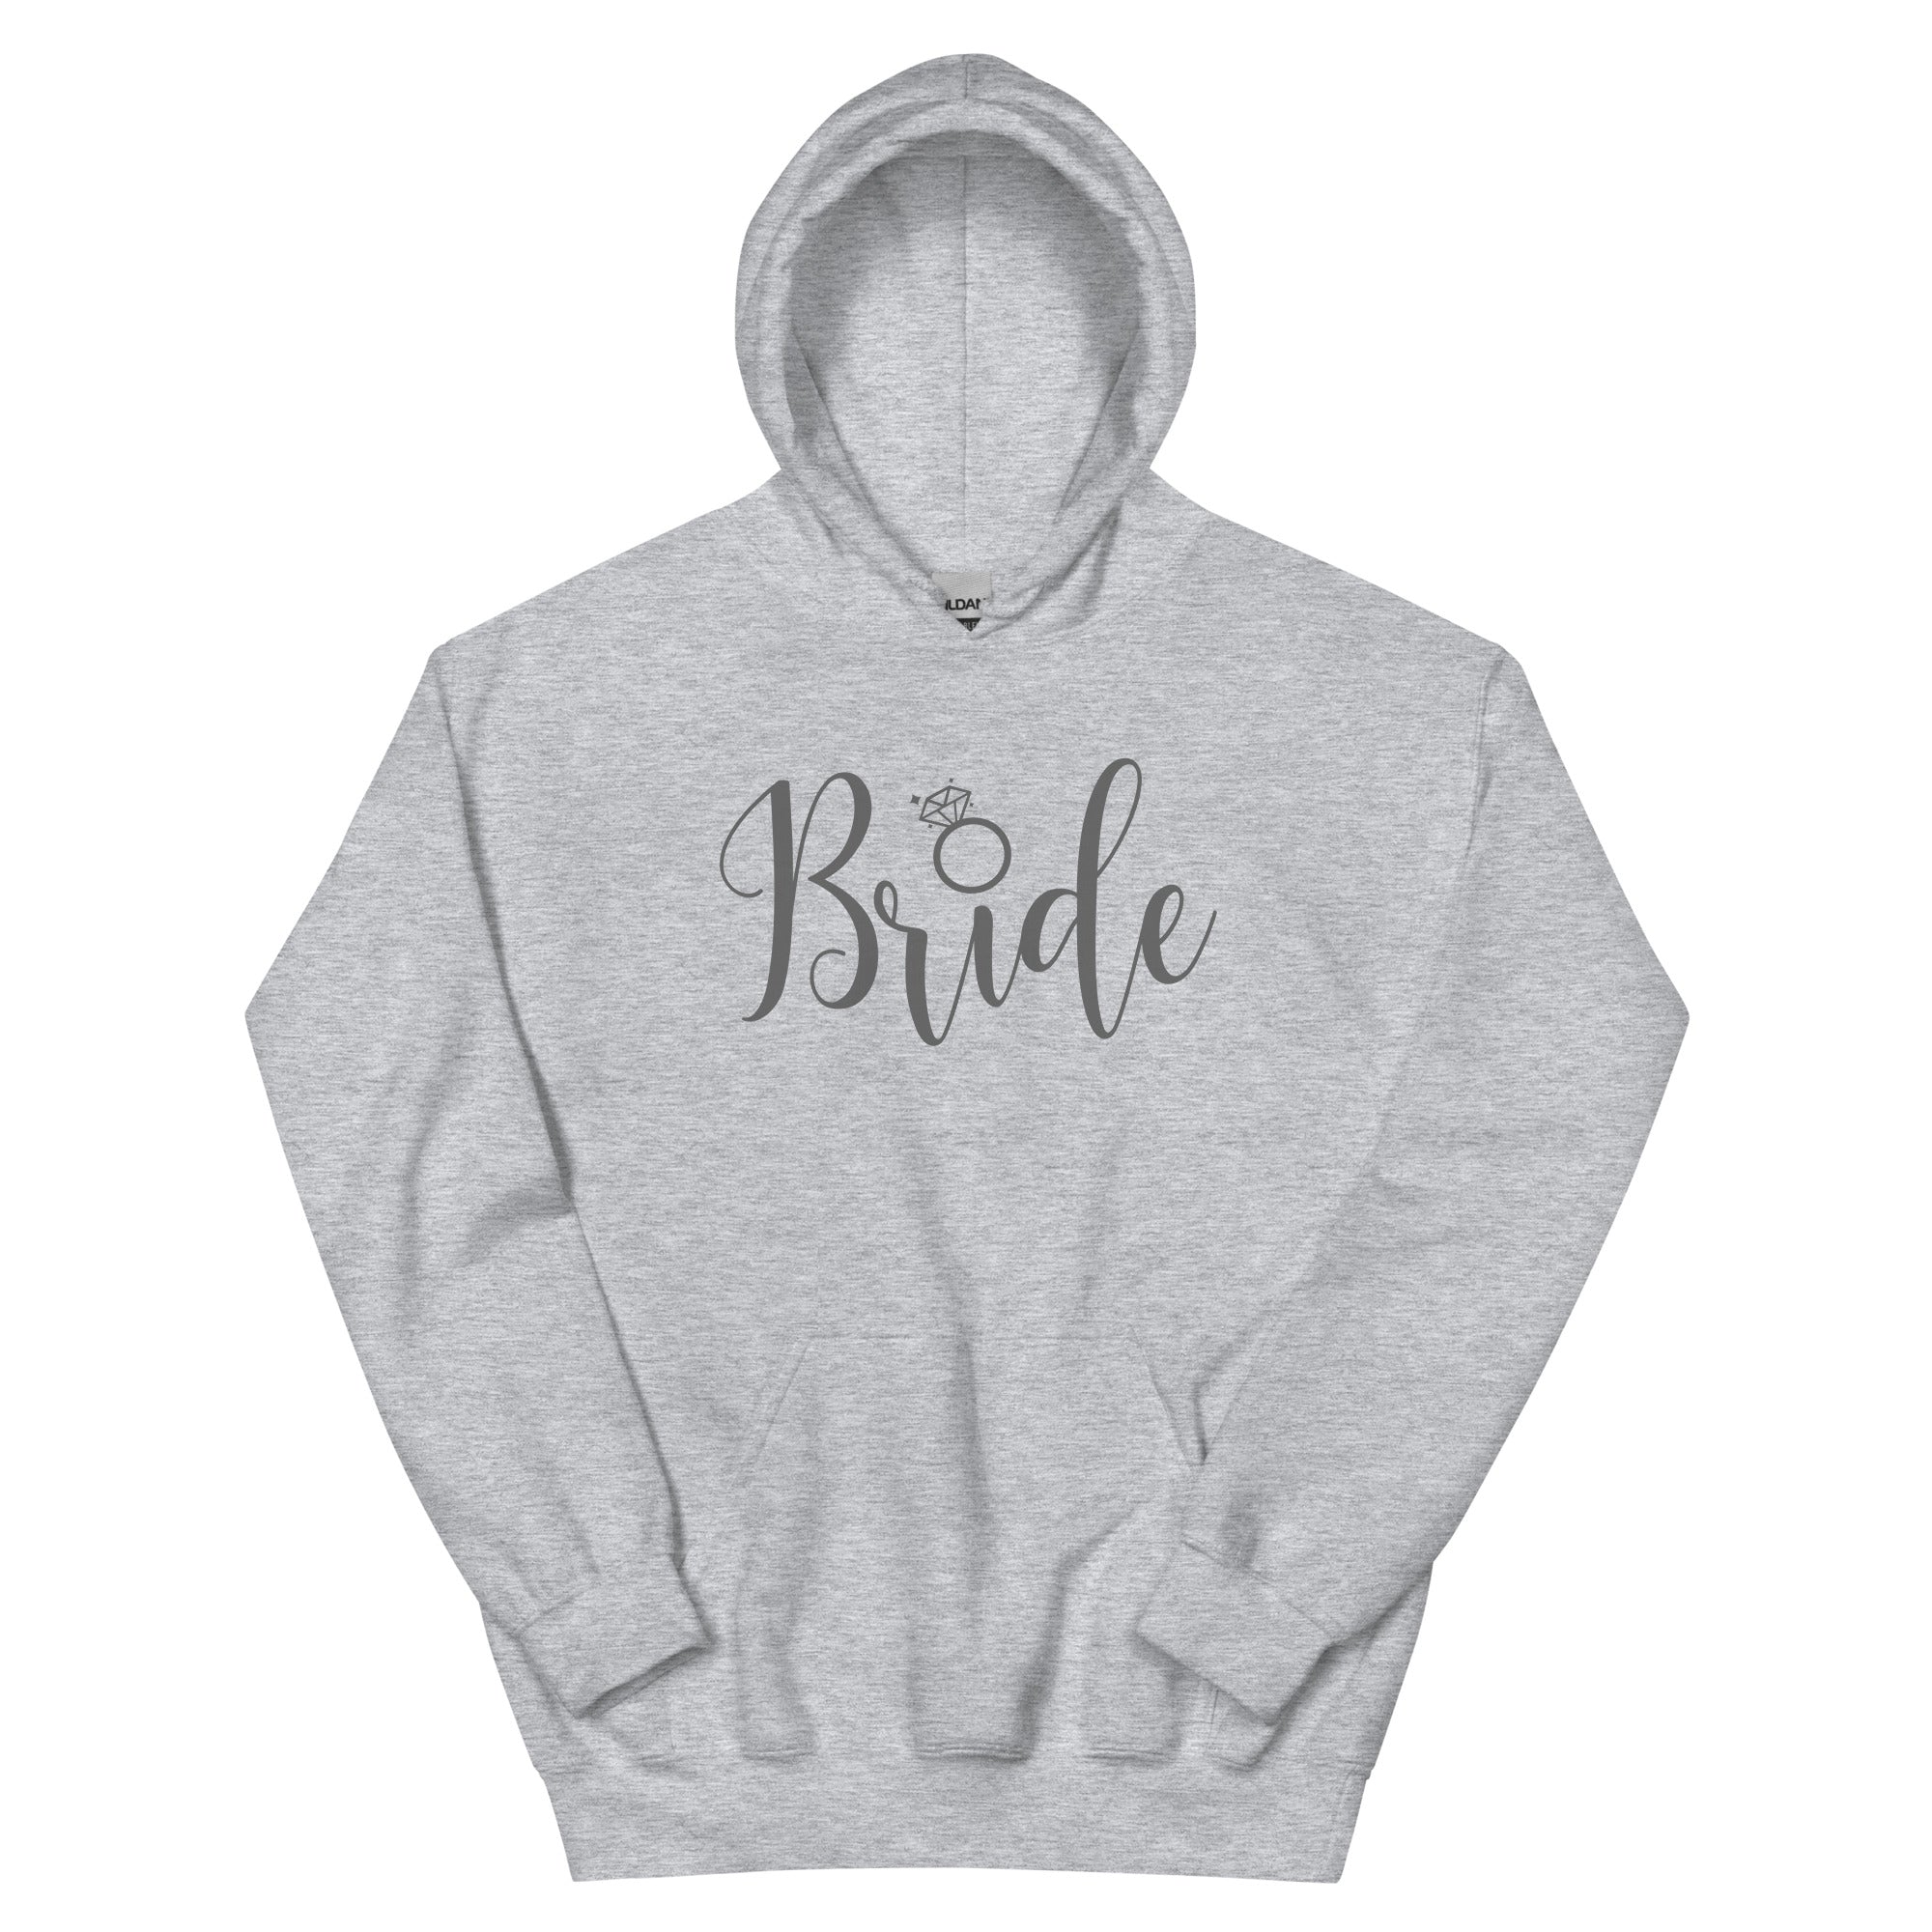 Bride - Unisex Hoodie